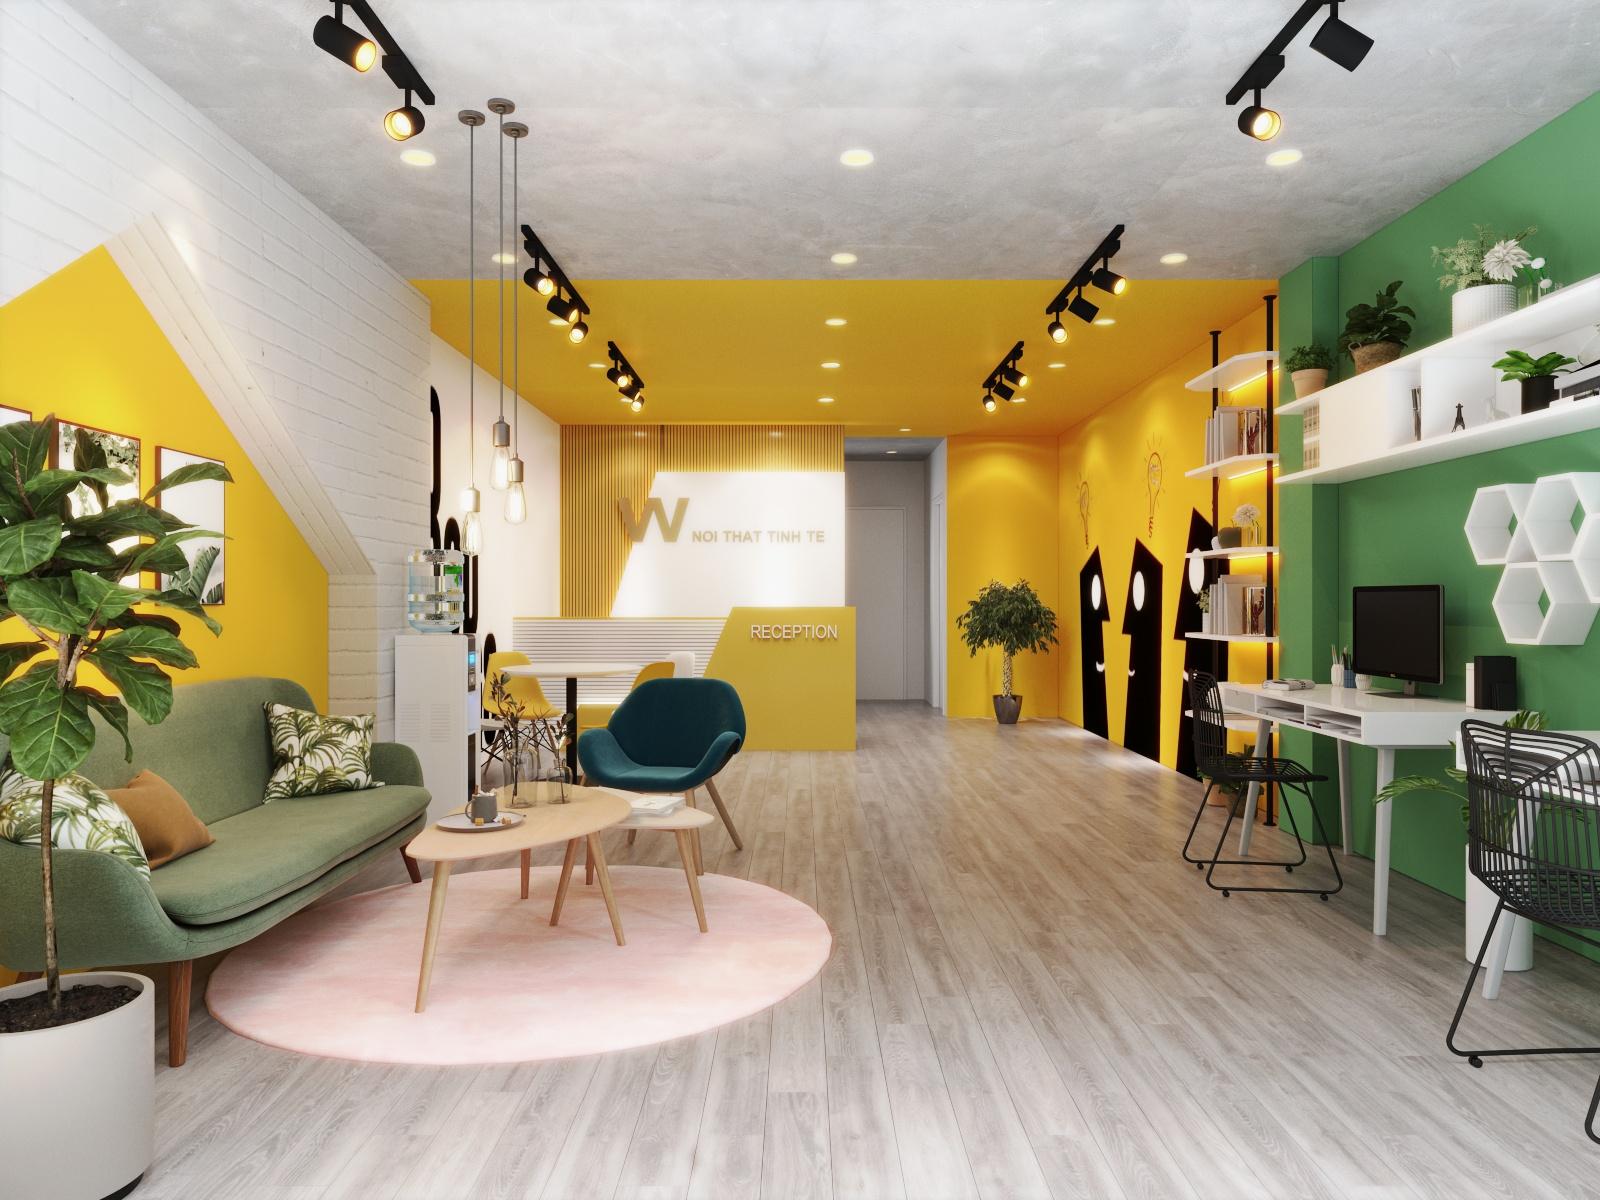 không gian văn phòng toát lên vẻ trẻ trung, tươi mới và tràn đầy năng lượng bởi sự kết hợp ăn ý giữa các màu sơn tường xanh lá, vàng chanh trên phông nền trắng - xám.